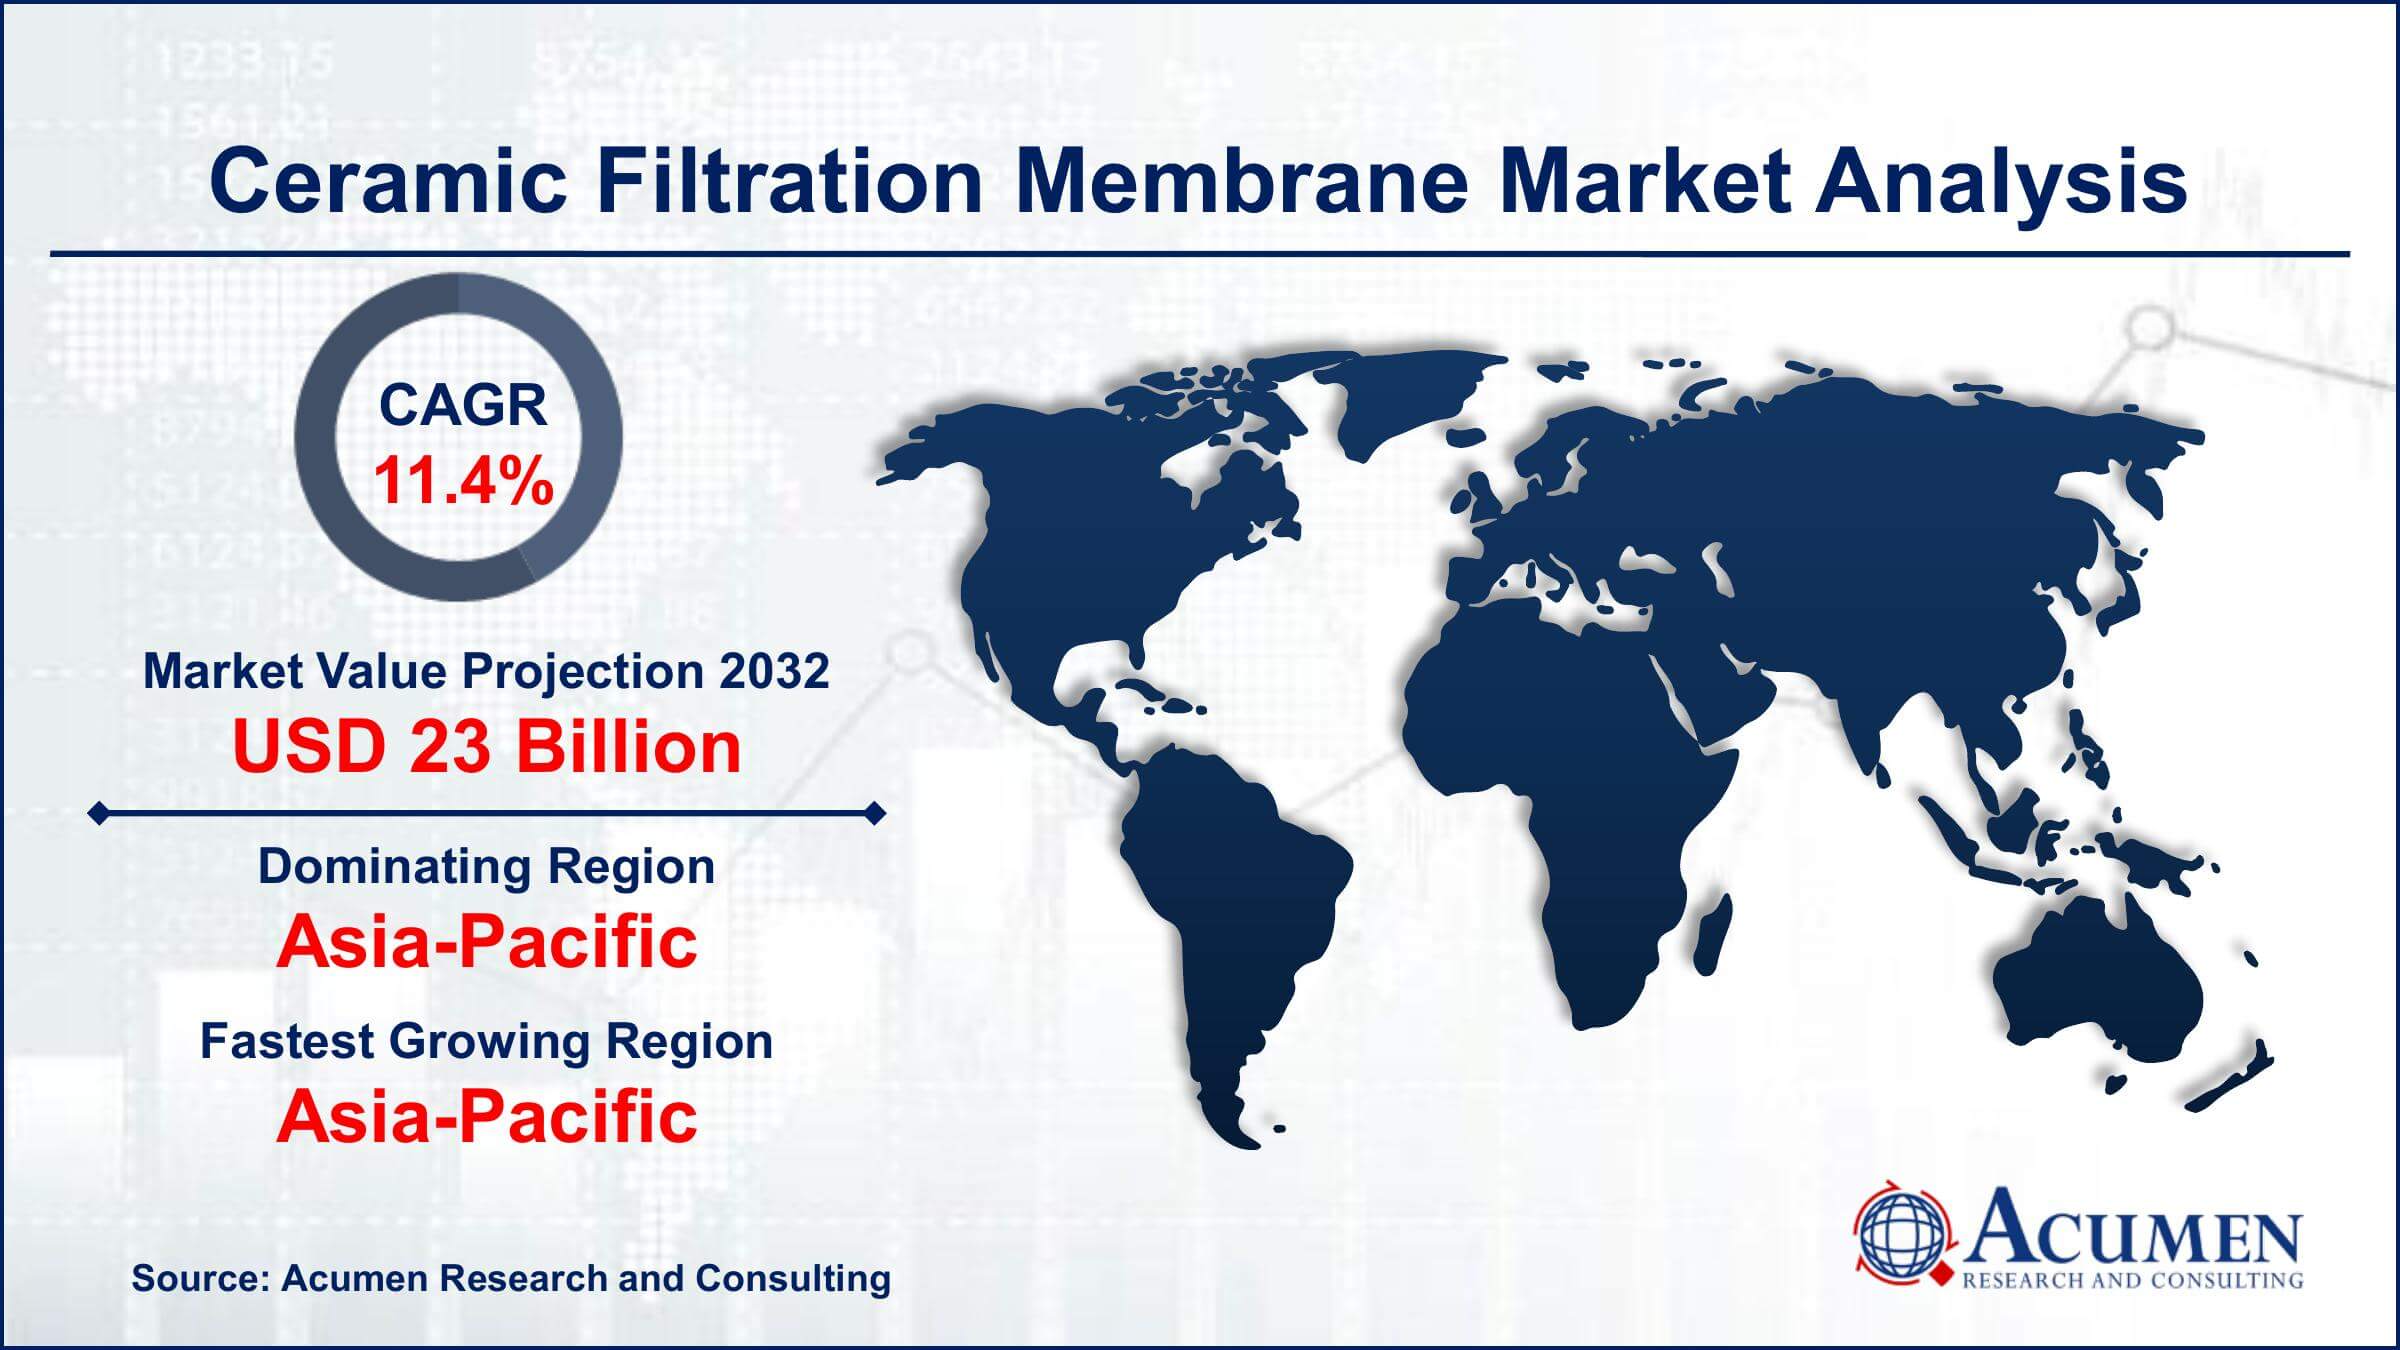 Global Ceramic Filtration Membrane Market Trends